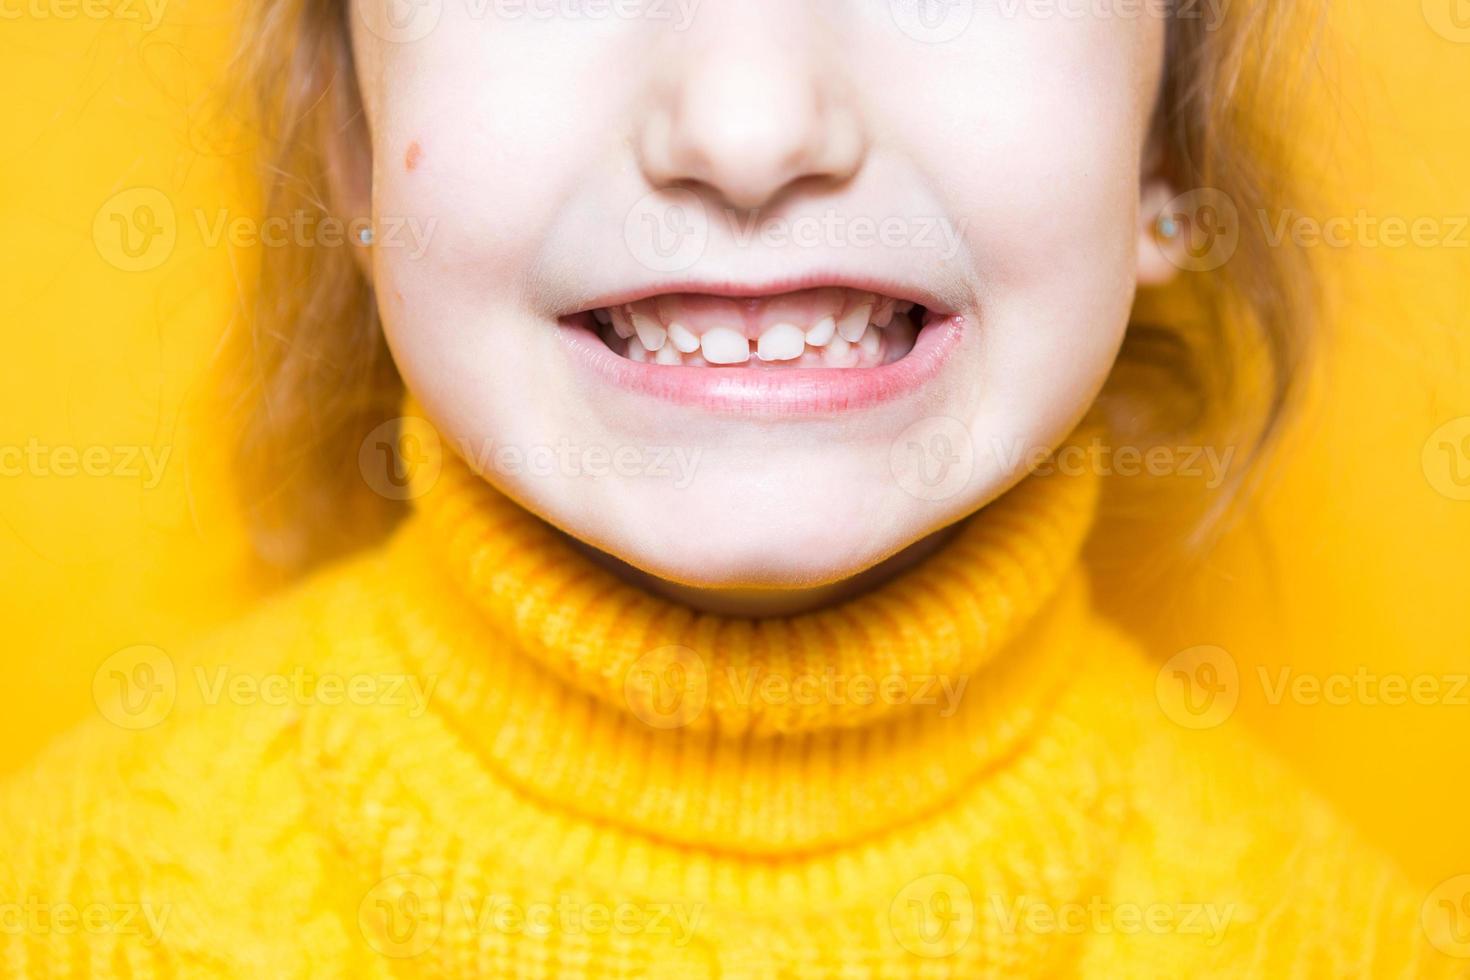 la niña muestra su mordida patológica de dientes, maloclusión, sobremordida. odontopediatría y periodoncia, corrección de mordida. salud y cuidado de los dientes, tratamiento de caries, dientes de leche. la mandíbula superior descansa sobre la encía. foto